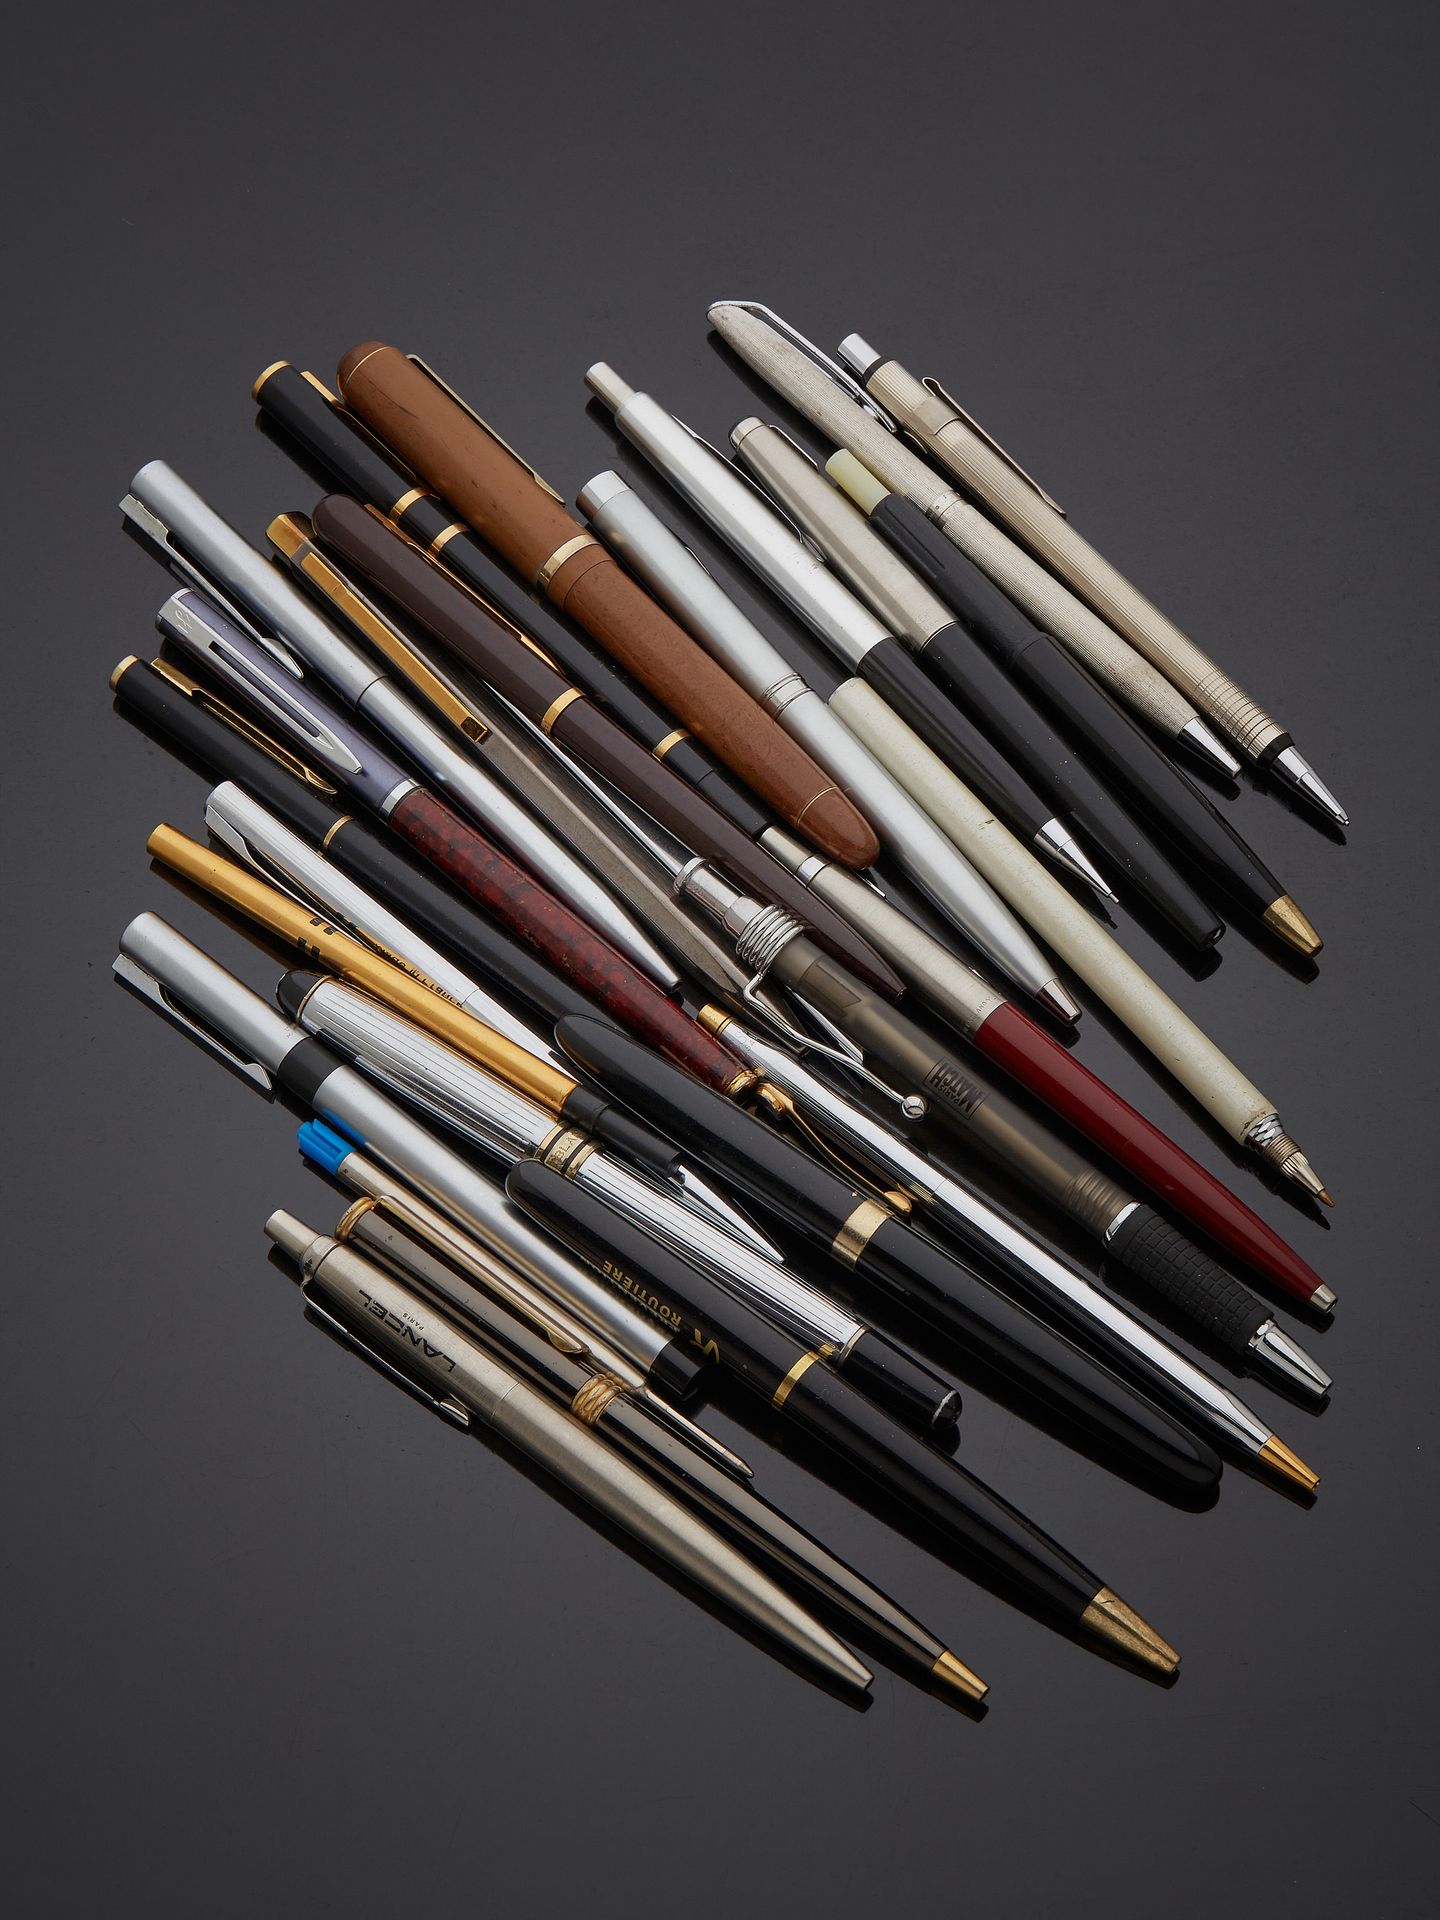 Null 一大套钢笔、圆珠笔和机械铅笔，有些是广告用的。
缺失、损坏、原样。